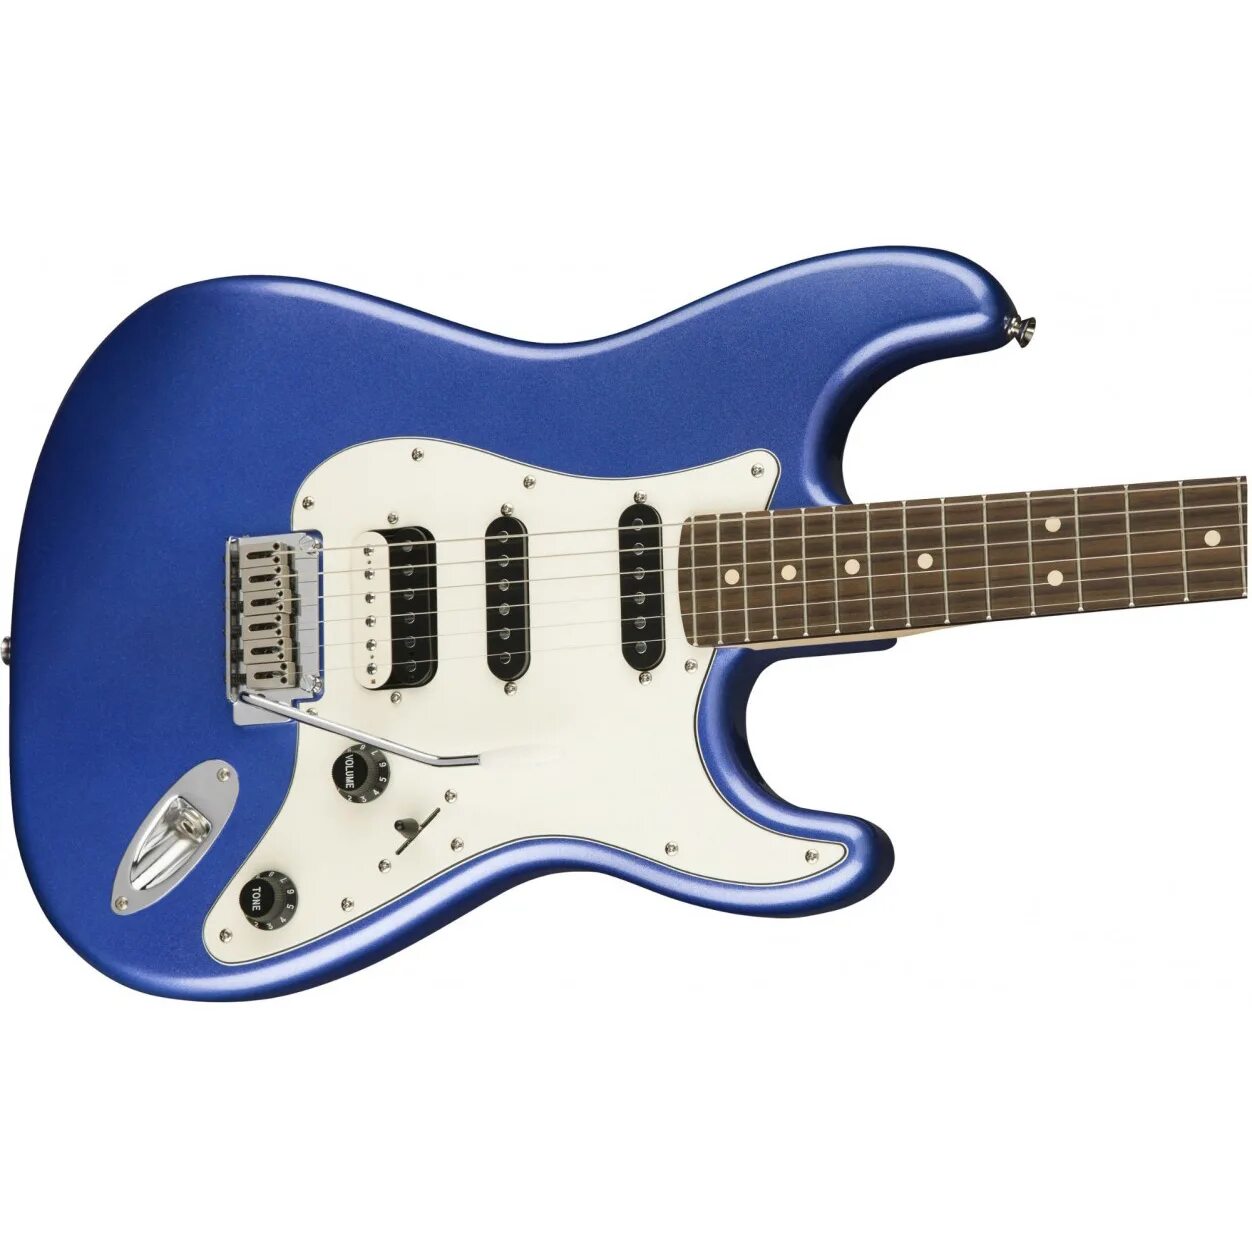 Электрогитара Squier HSS. Fender Squier Stratocaster синий. Электрогитара Squier HSS Stratocaster. Электрогитара Squier голубая.